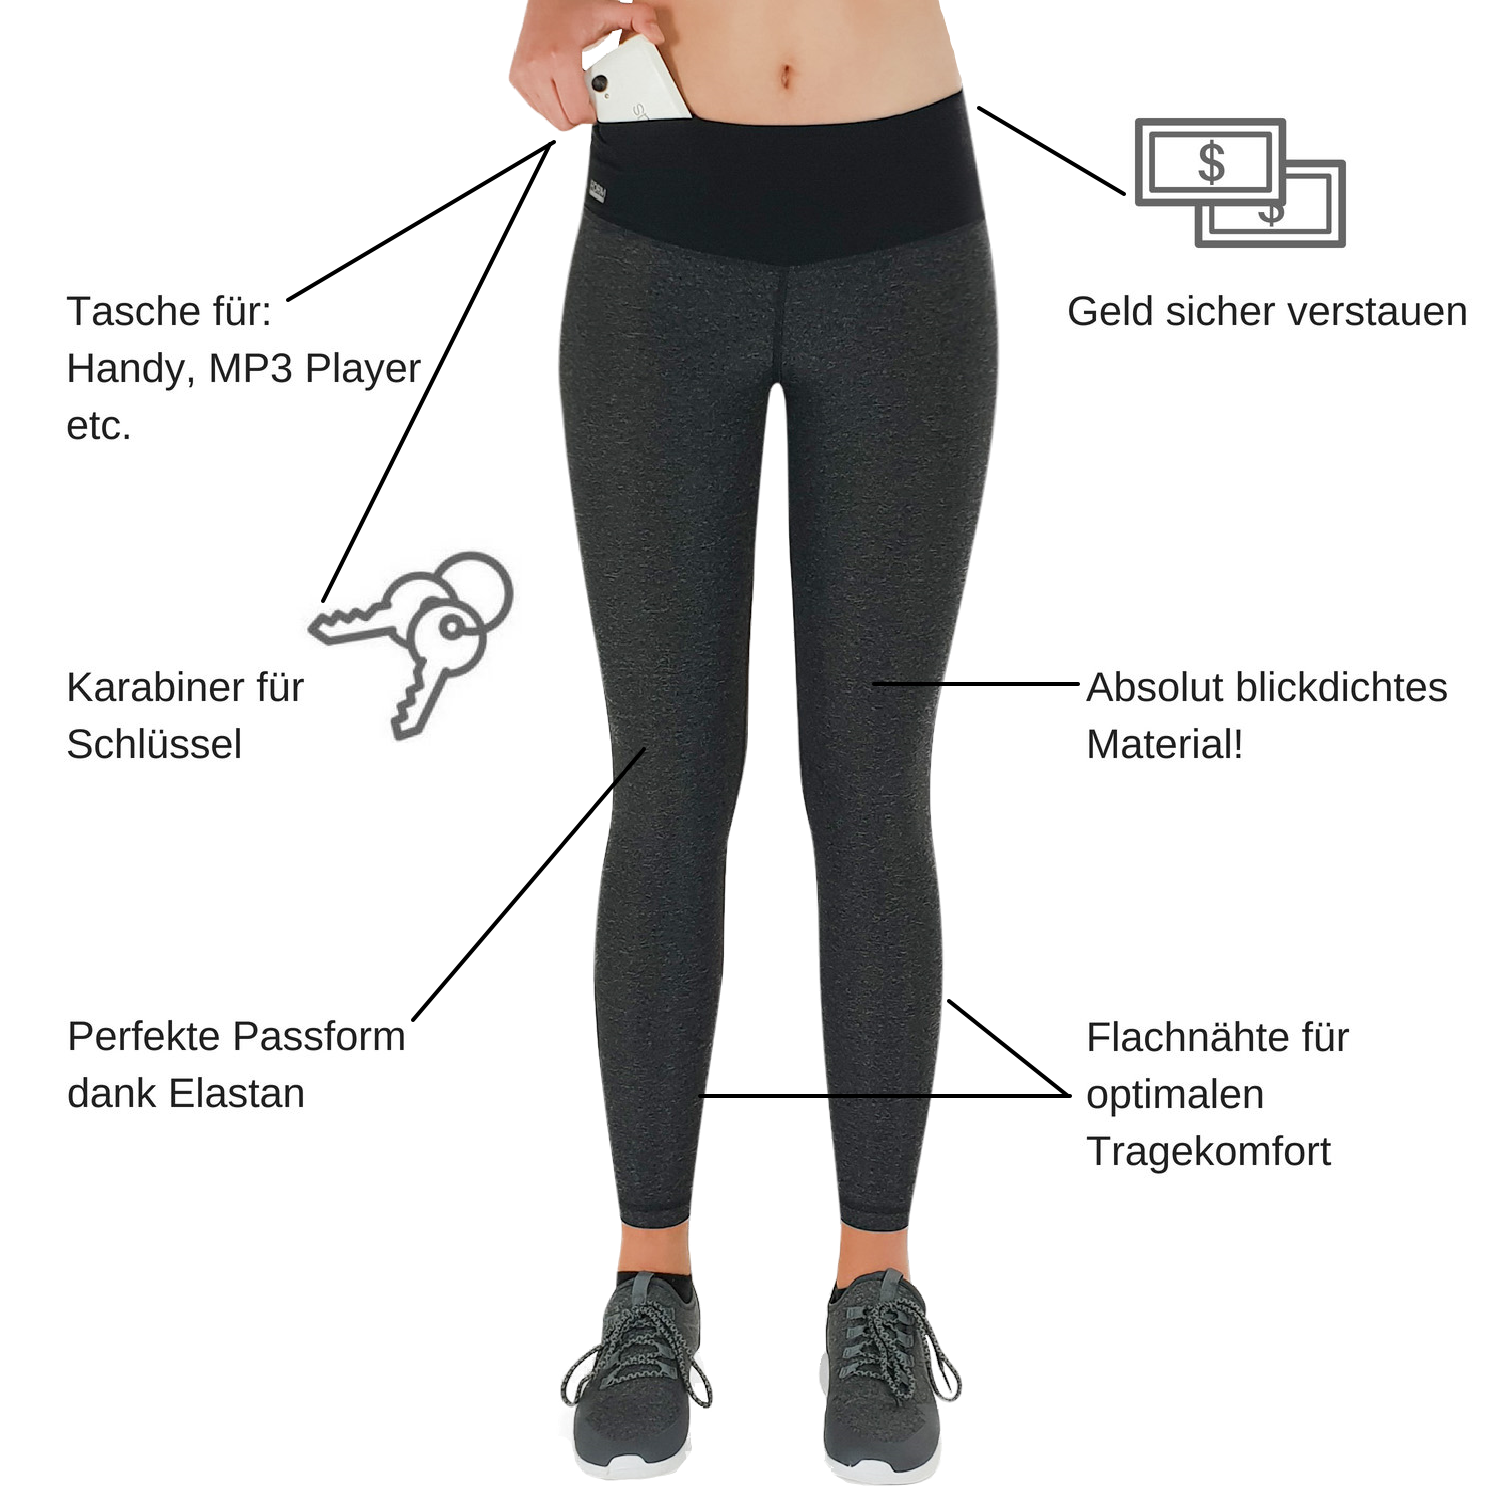 Sport Damen Leggings mit Taschen für das Handy - Infografik